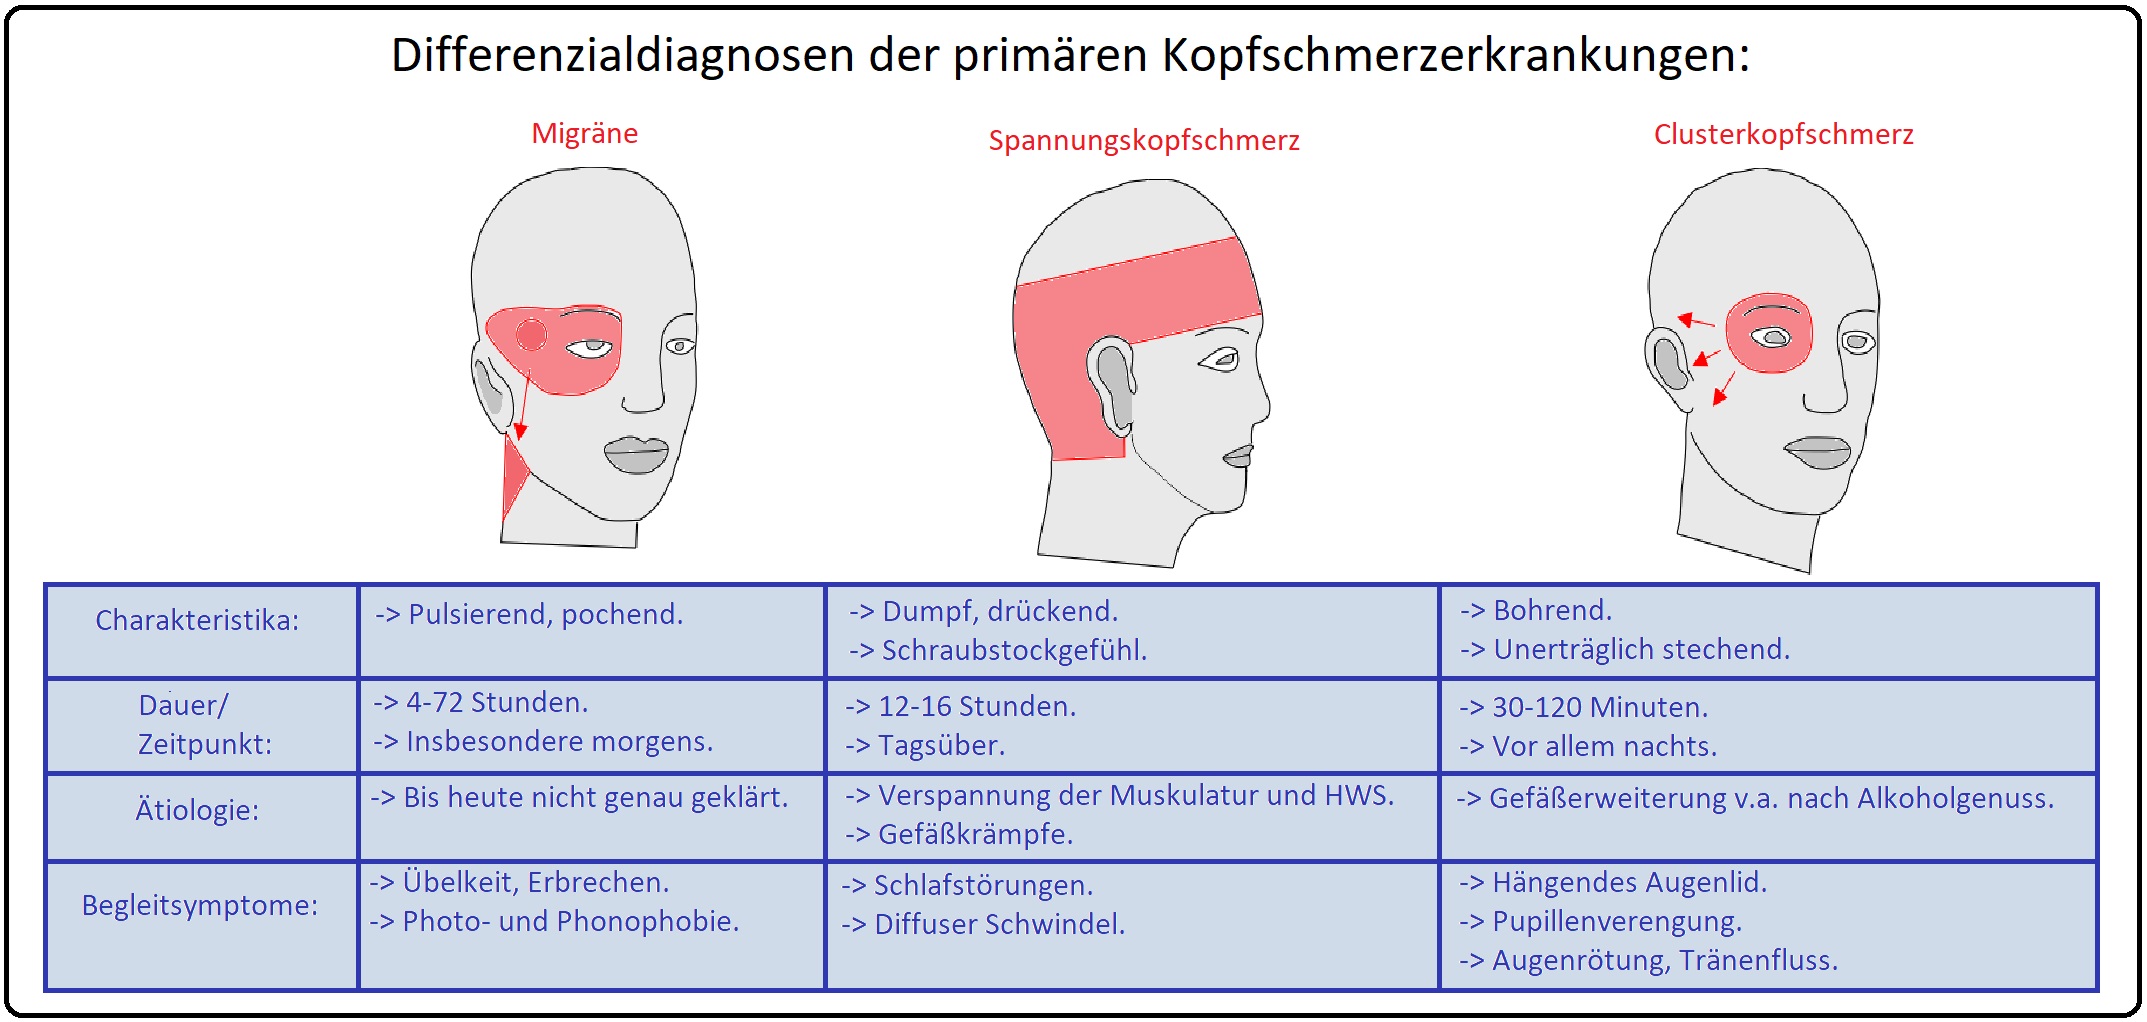 020 Differenzialdiagnosen der primären Kopfschmerzerkrankungen